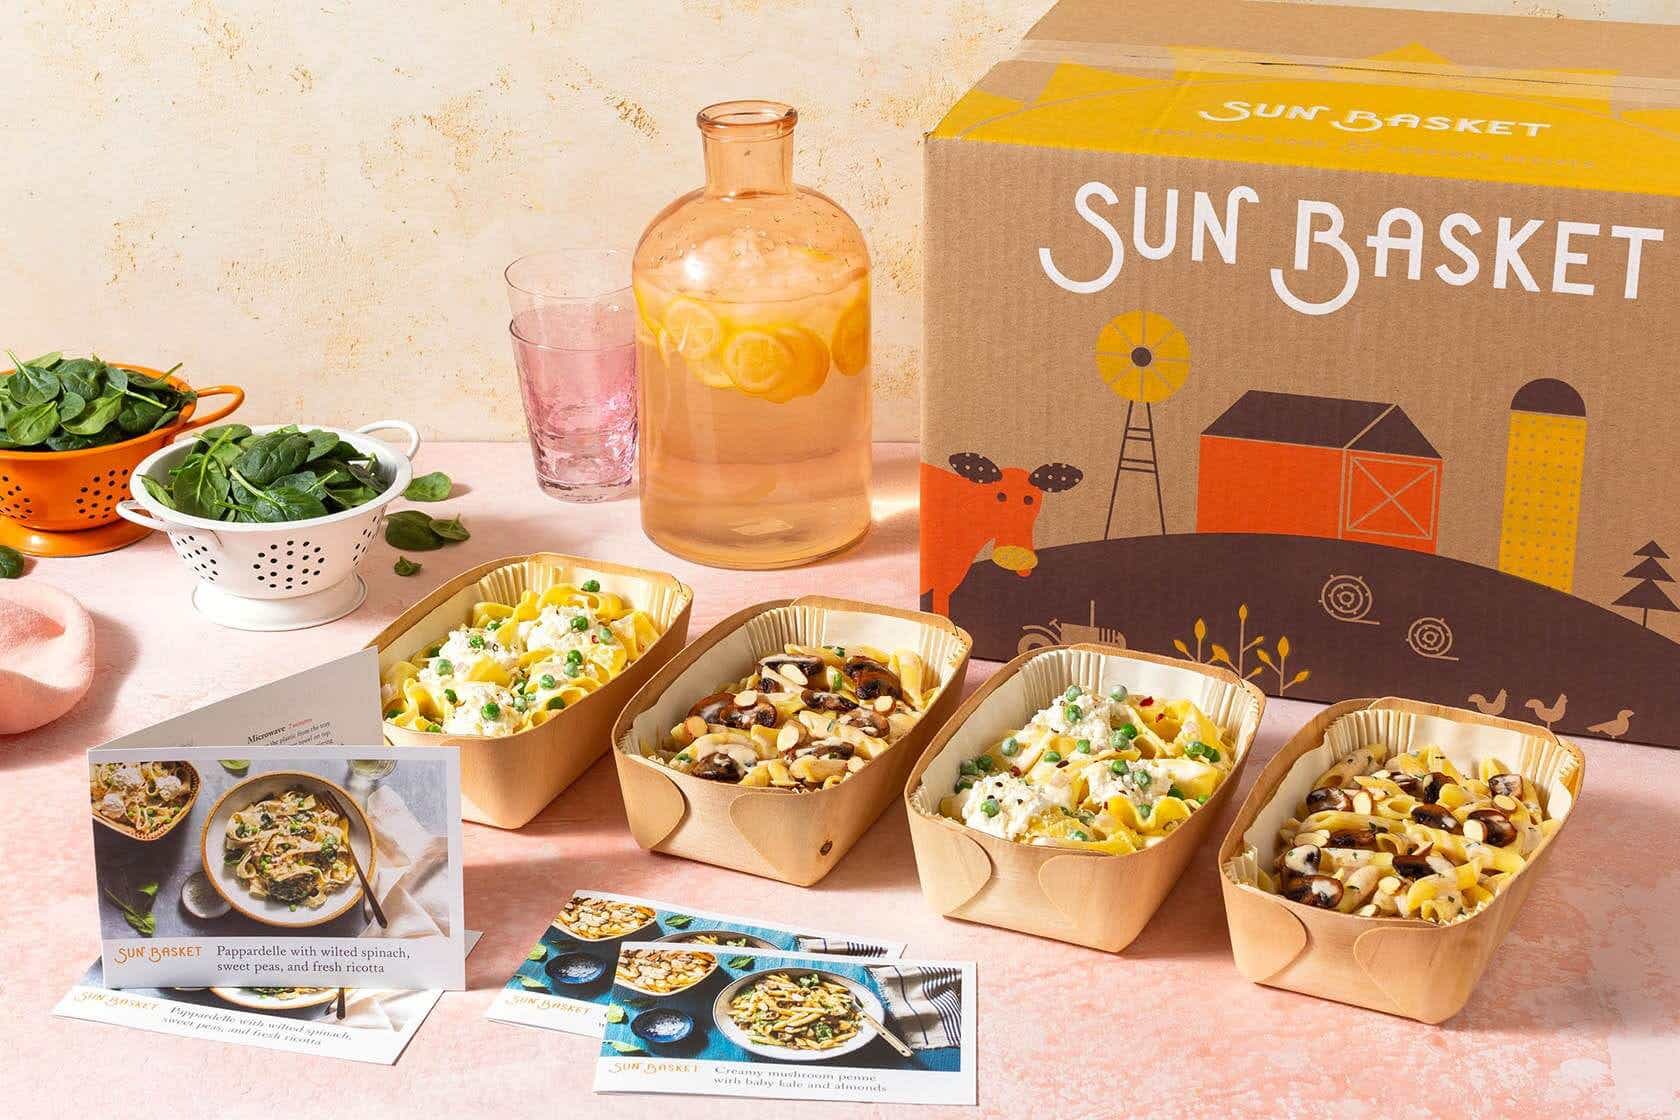 sunbasket meal kit on table